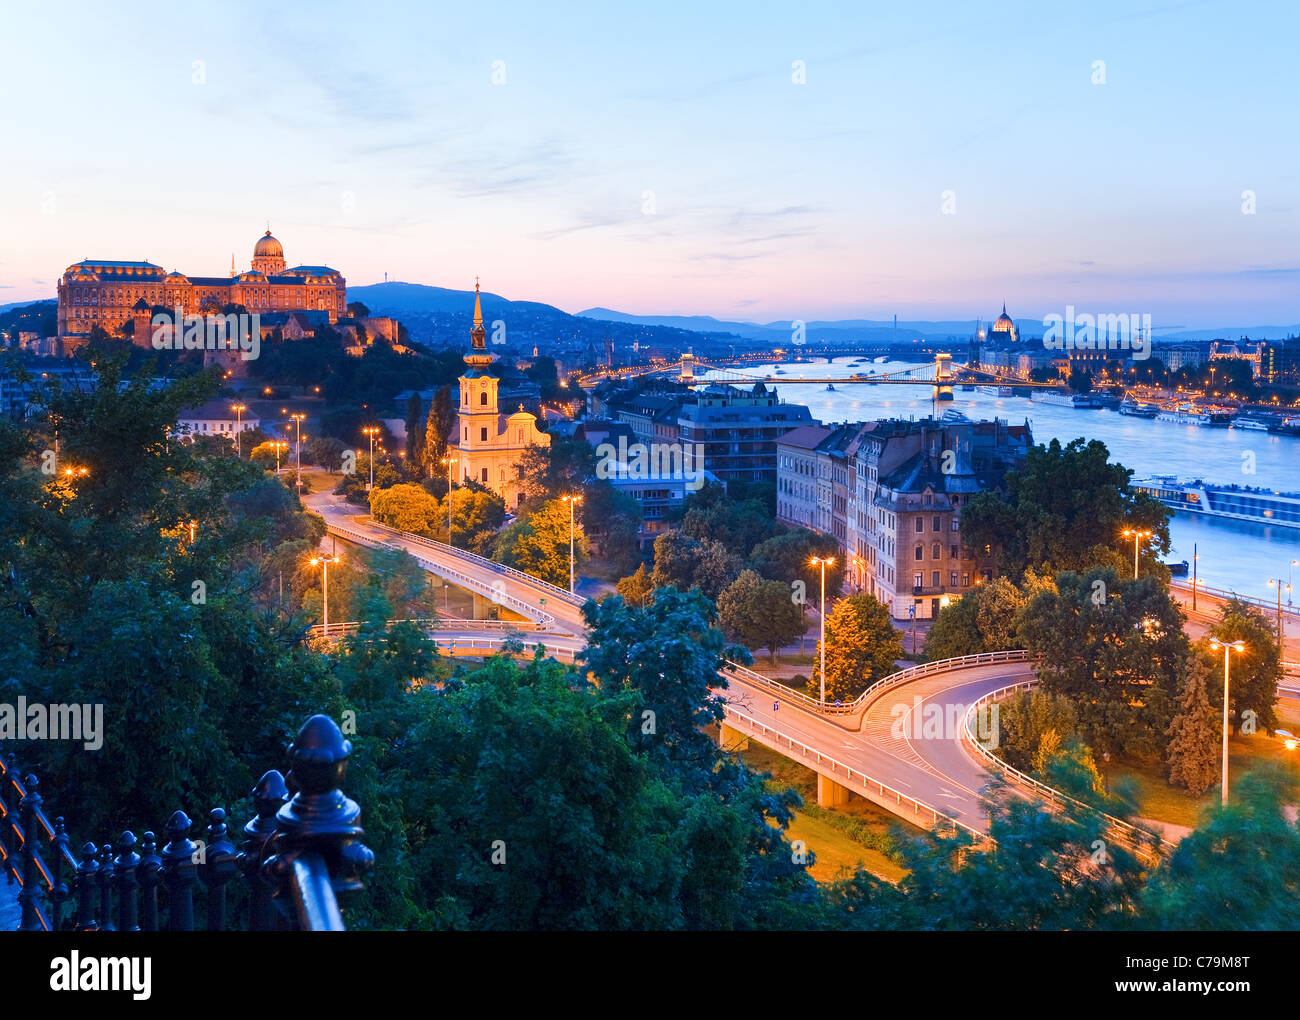 La ville de Budapest nuit vue panoramique. Longue exposition. Banque D'Images